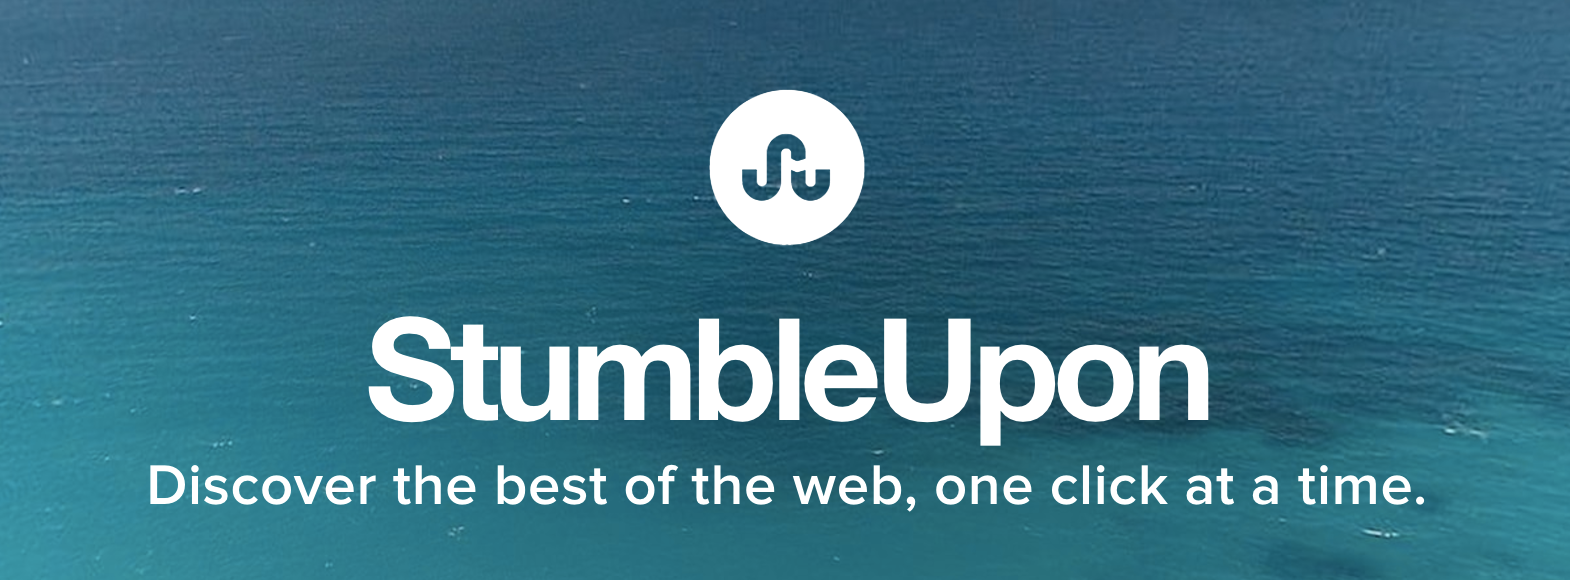 Из основных сайтов социальных закладок,   StumbleUpon   один из   лучшие онлайн генераторы трафика   ,  Пользователи просматривают или «сталкиваются» с контентом по интересующим их вопросам и снова голосуют за понравившийся контент